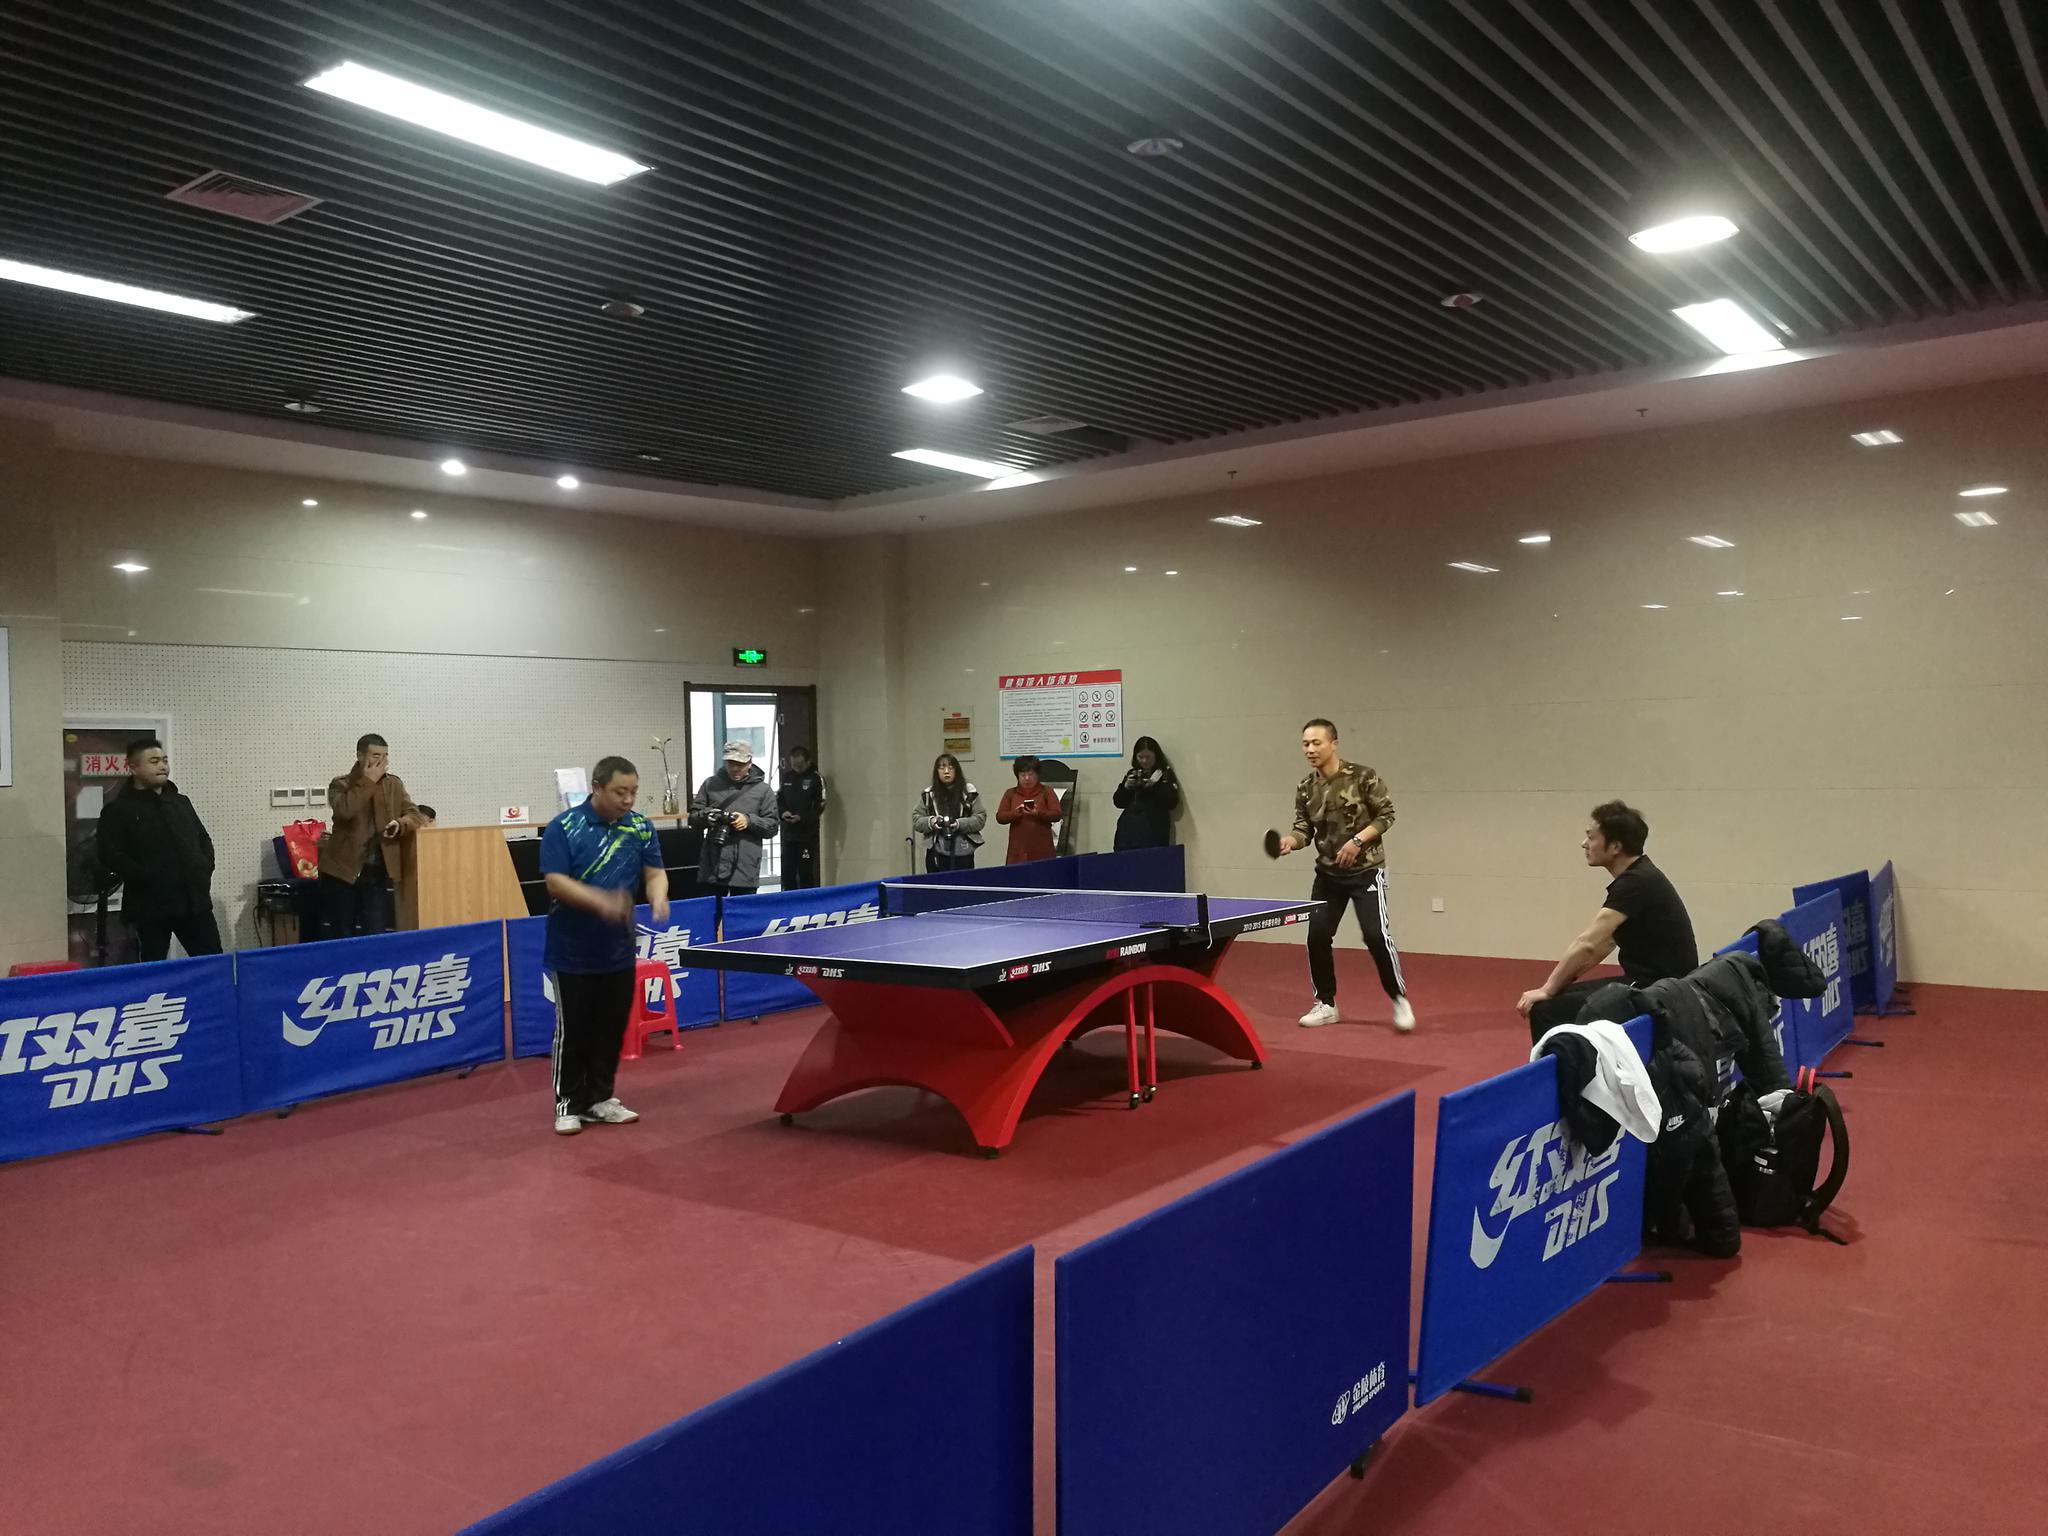 苏州奥体中心乒乓球馆图片